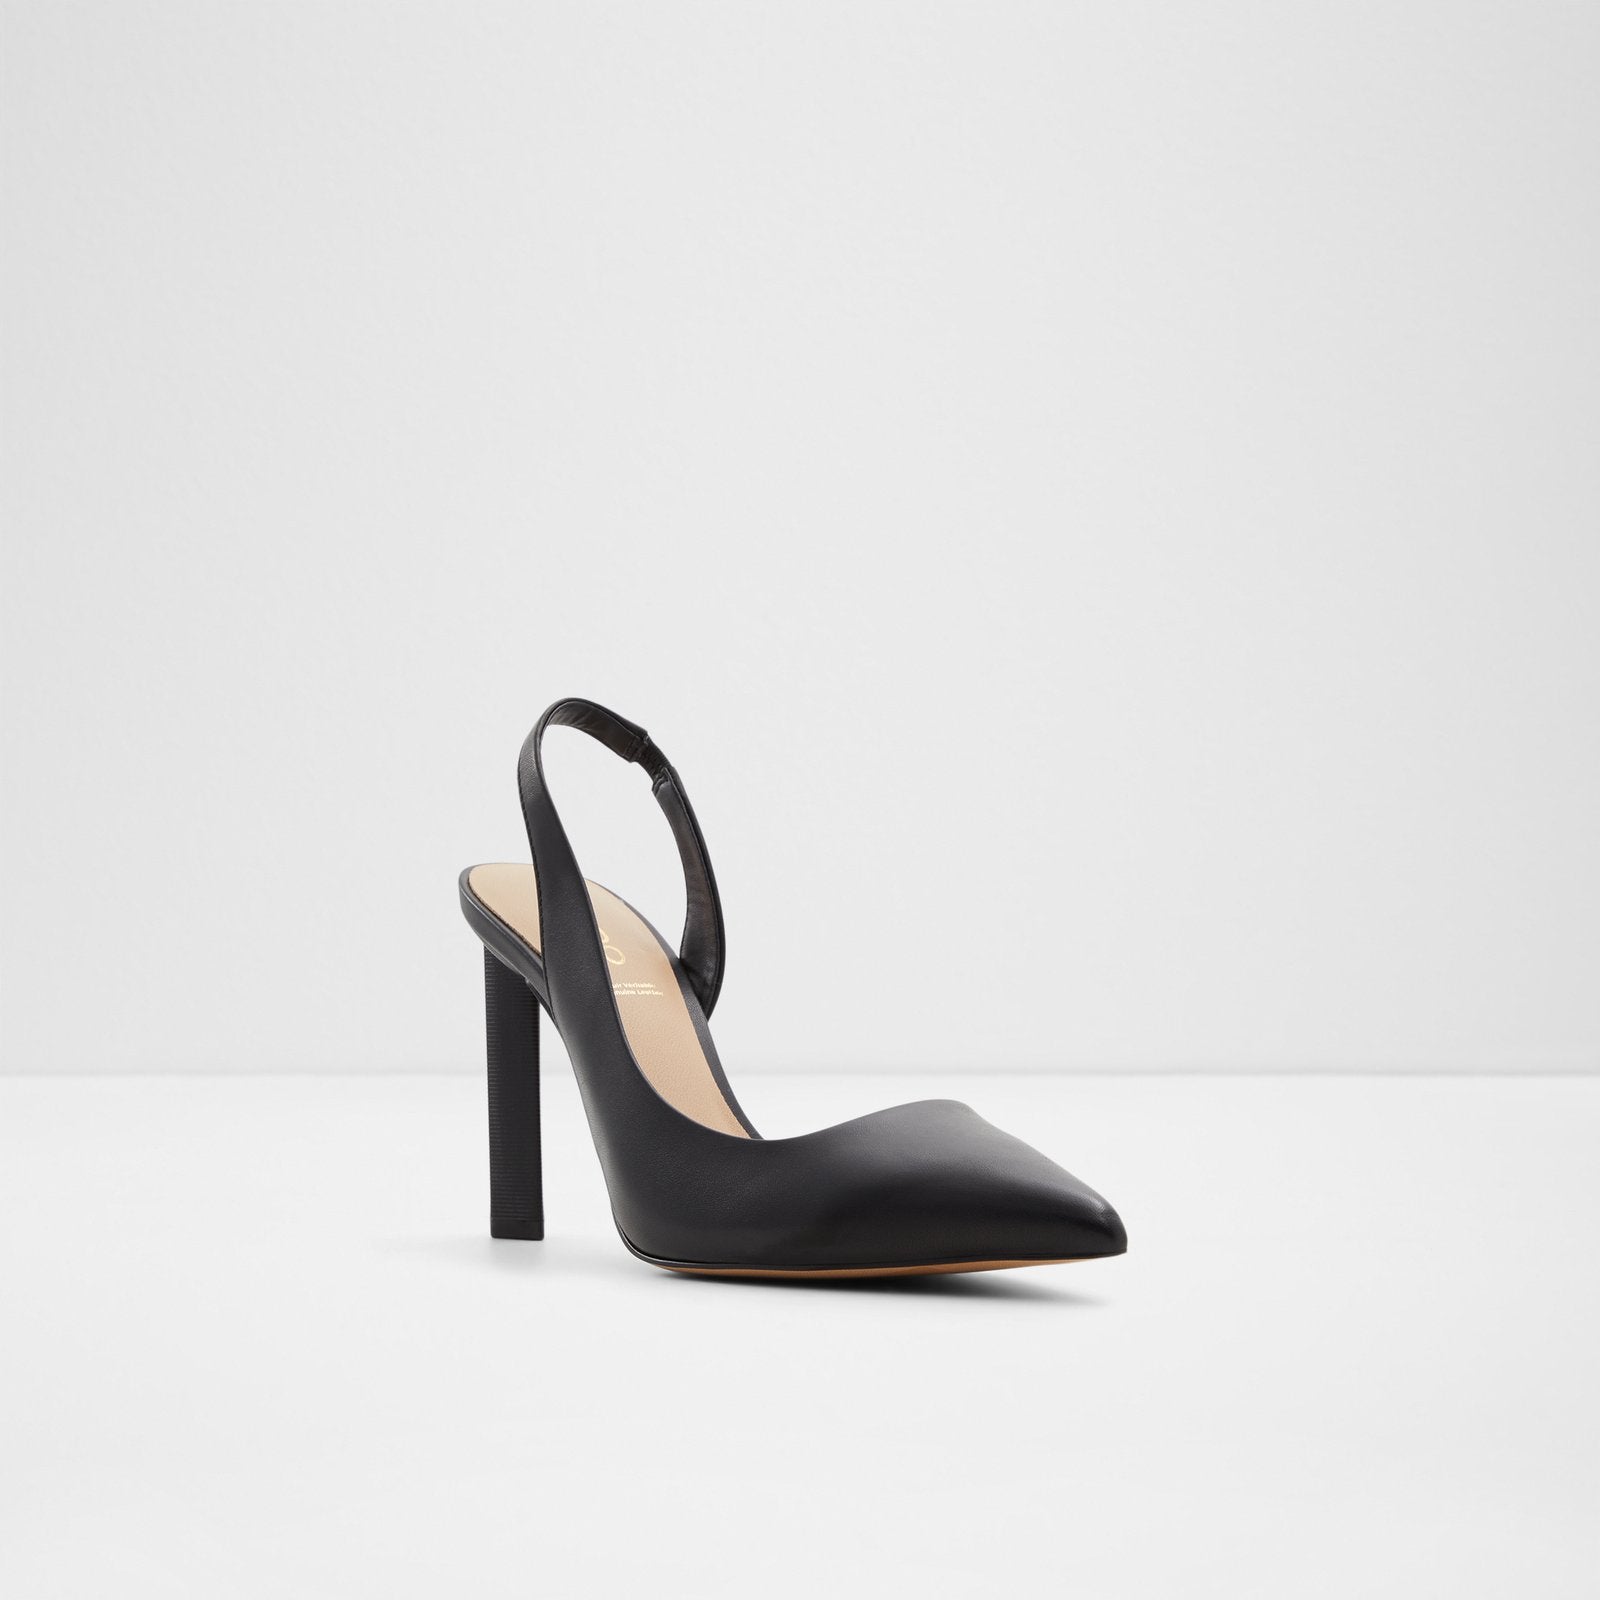 Loucette Women Shoes - Black - ALDO KSA